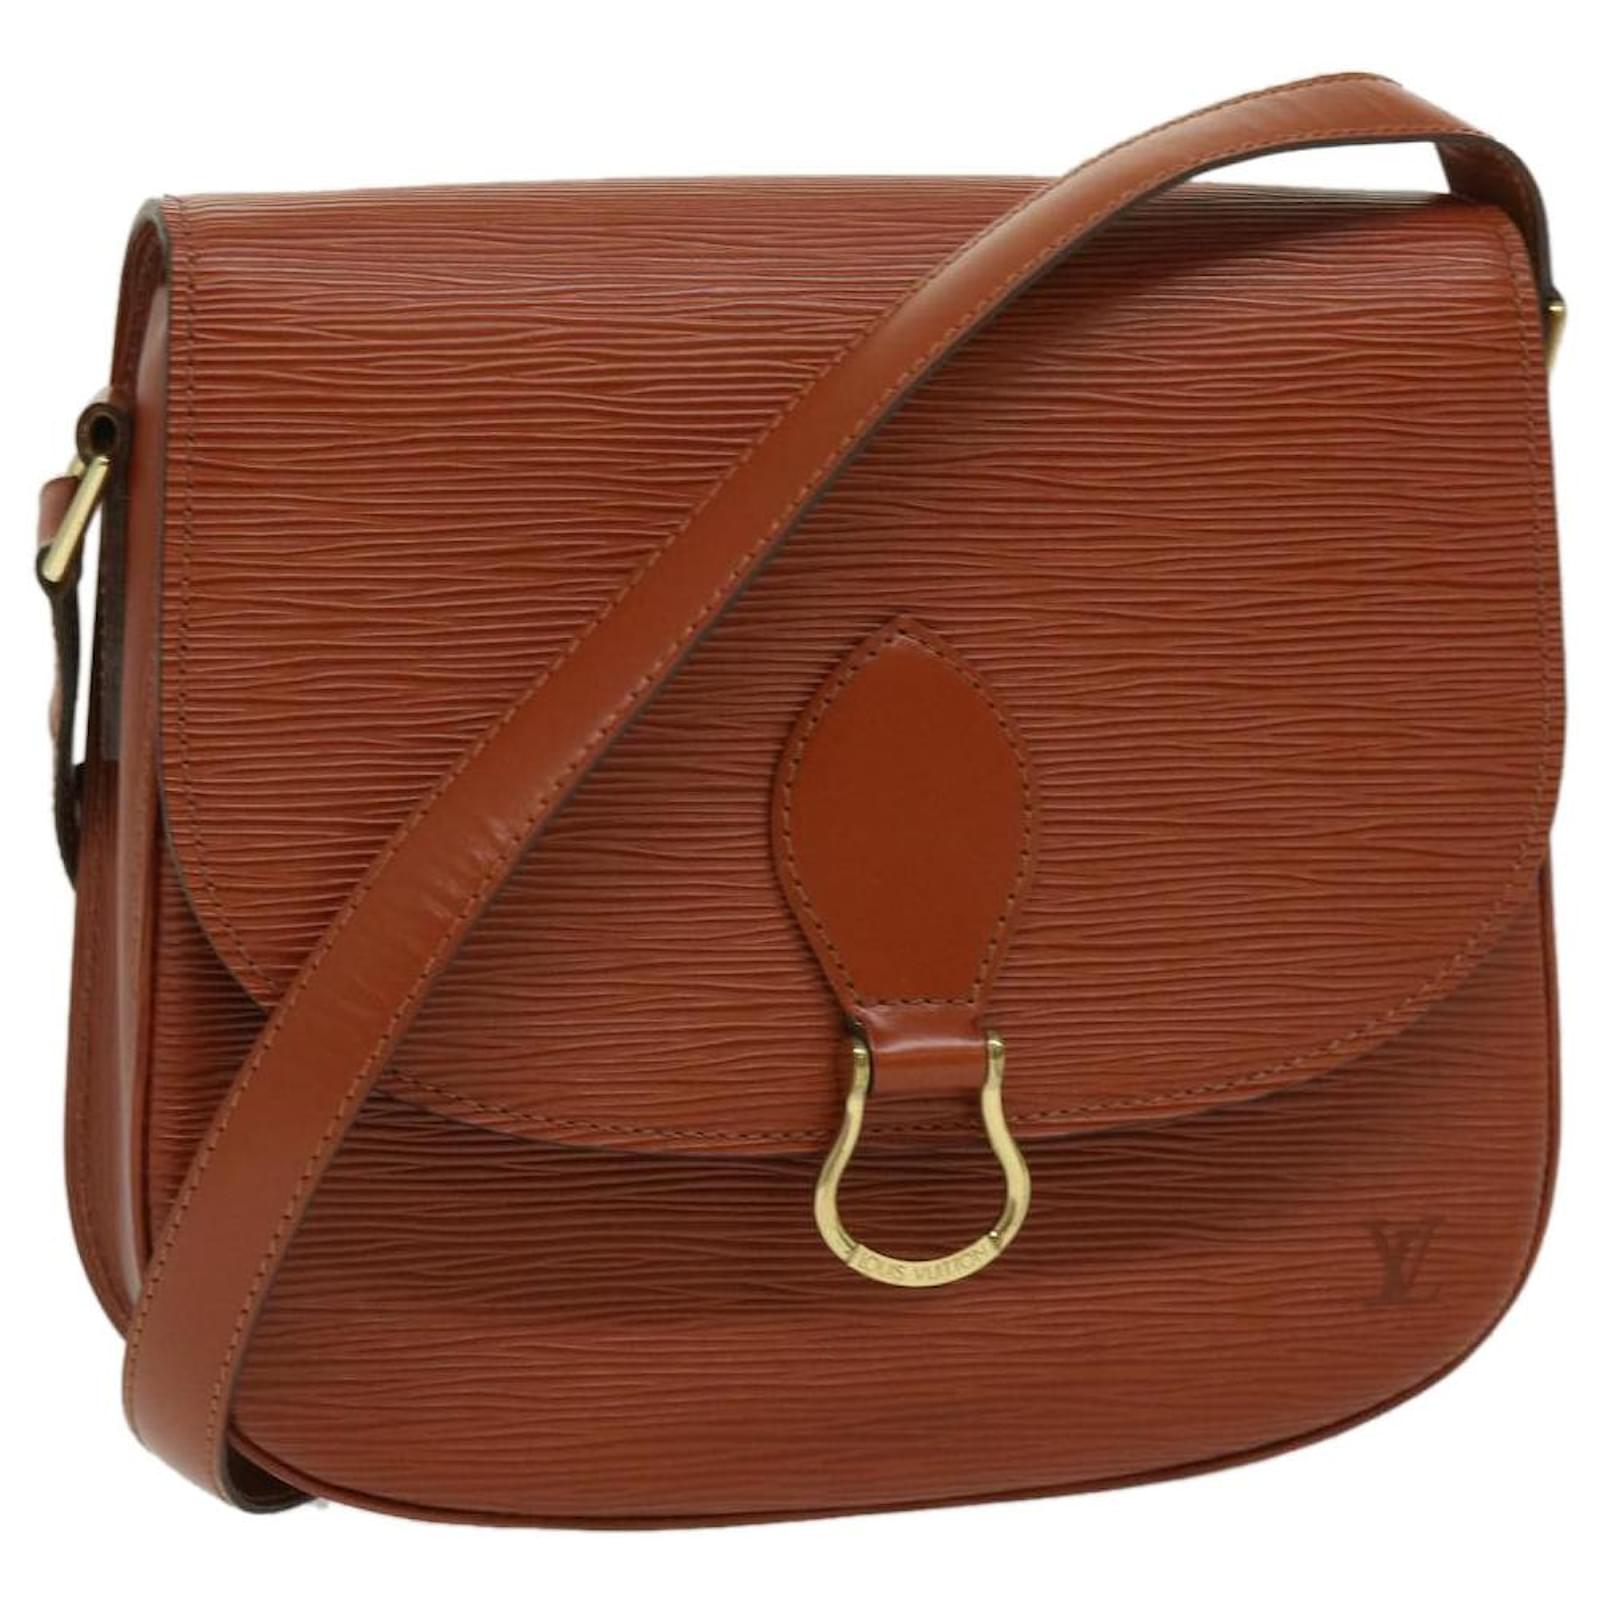 Saint Cloud sling bag Authentic Louis Vuitton GM size Ab Rank